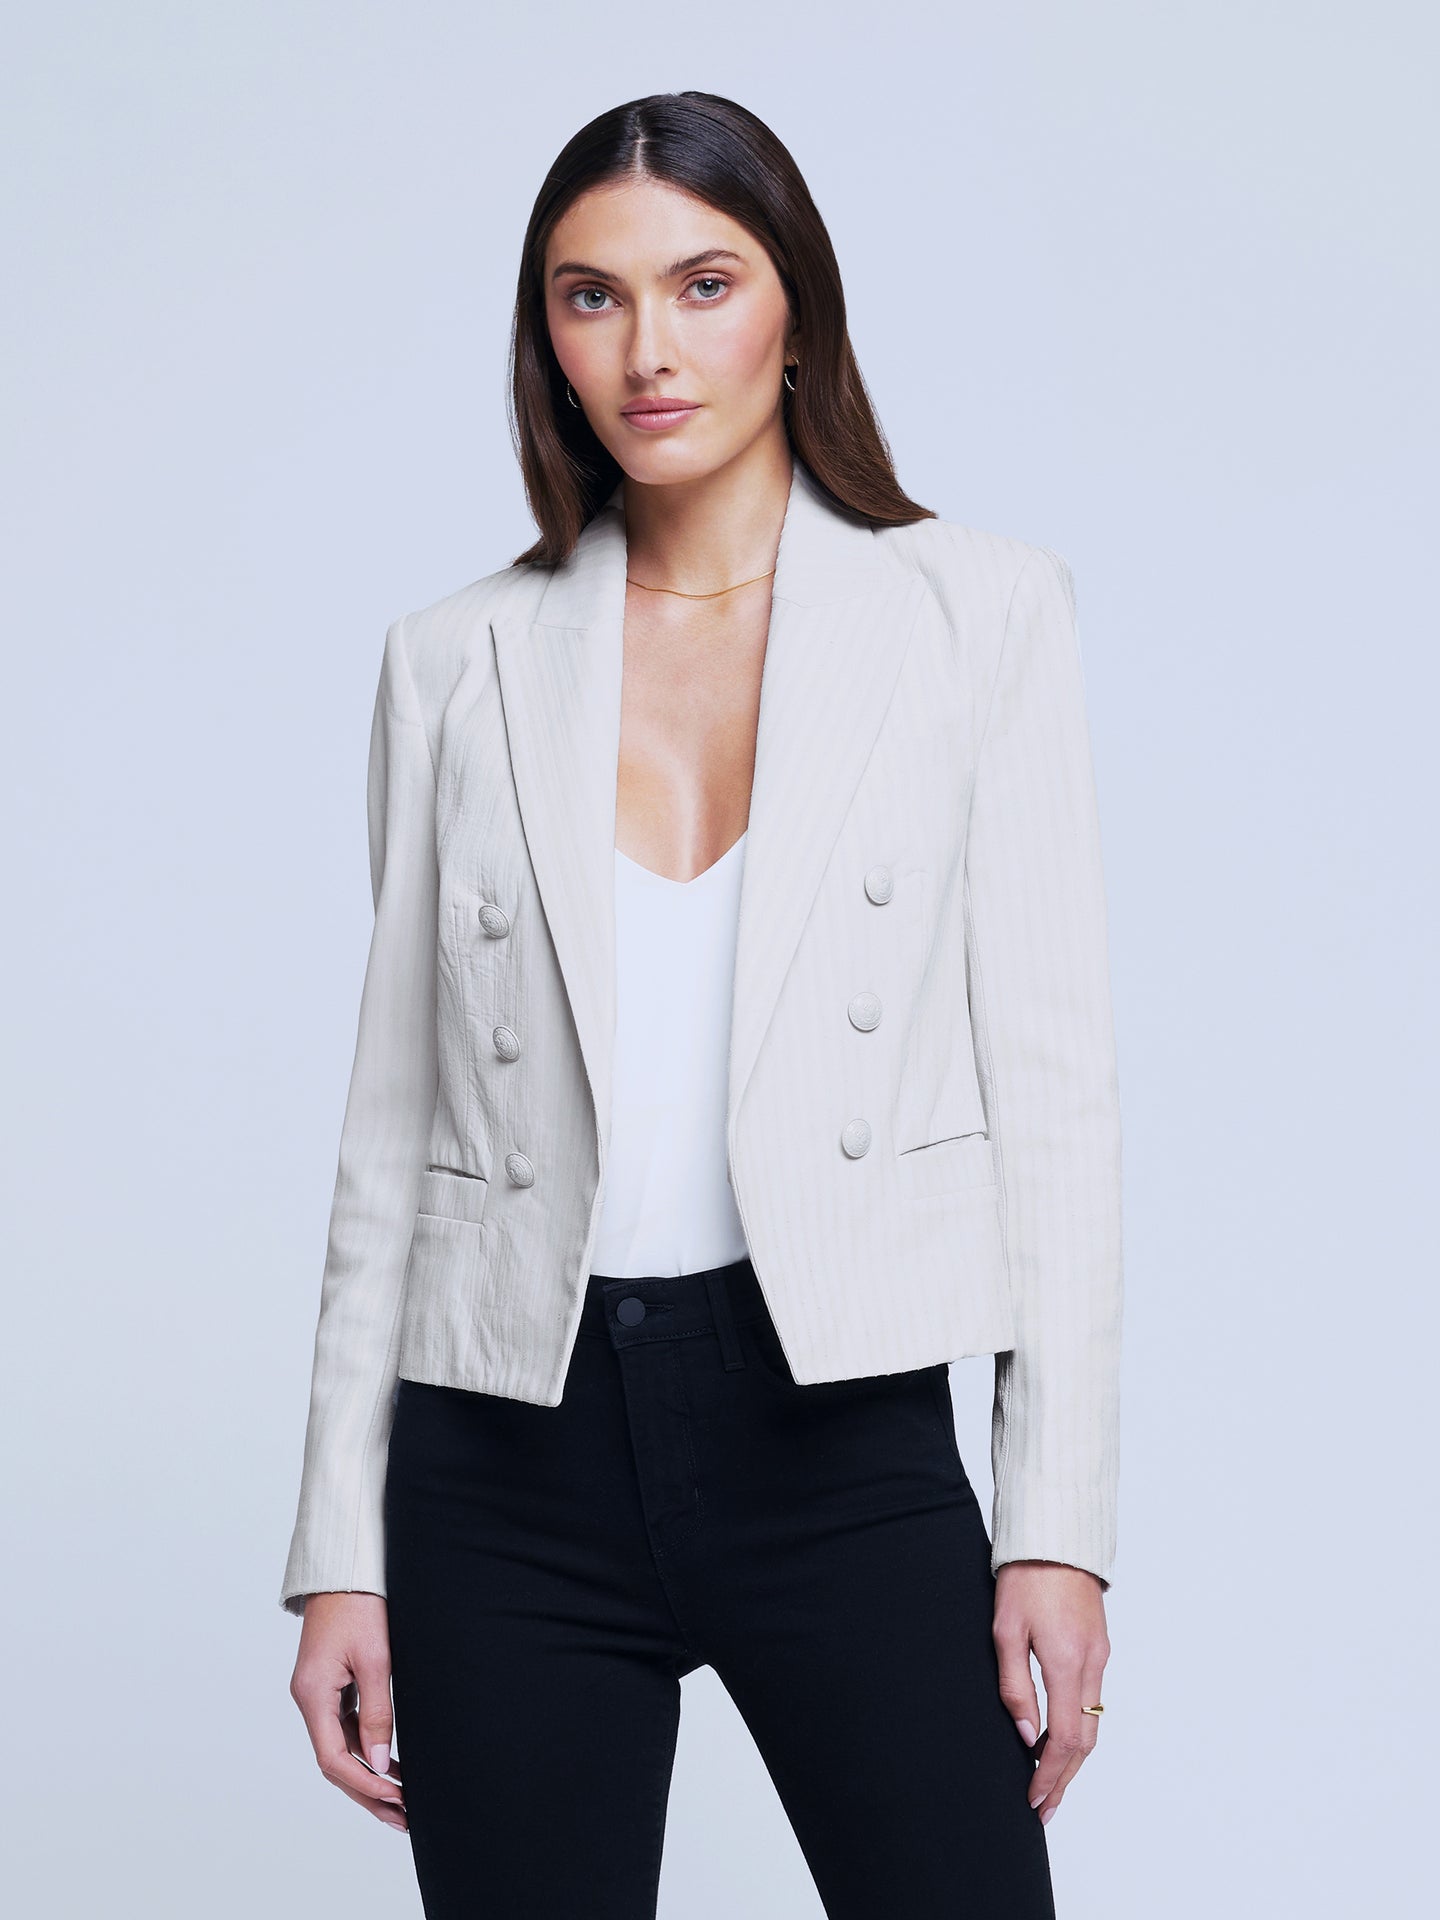 Women's Elegant Leather Jackets & Clothing | L'AGENCE